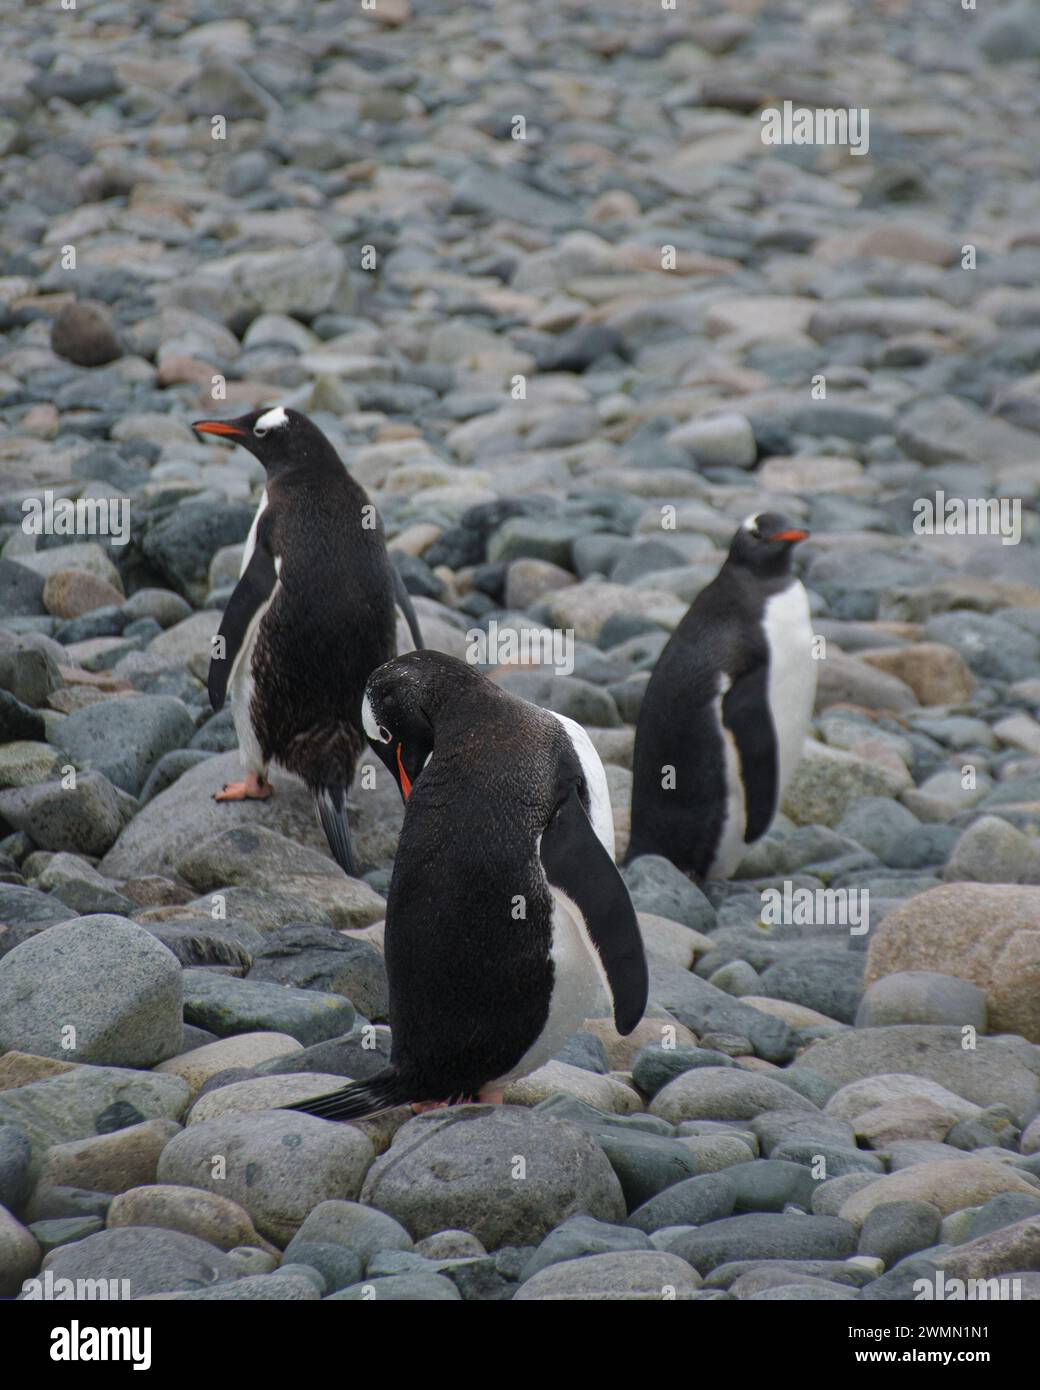 Während einer Expedition in die Antarktis hatte ich die Gelegenheit, diese Fotos von Pinguinen in ihrer natürlichen Umgebung zu machen, ein sehr aufregendes Erlebnis. Stockfoto